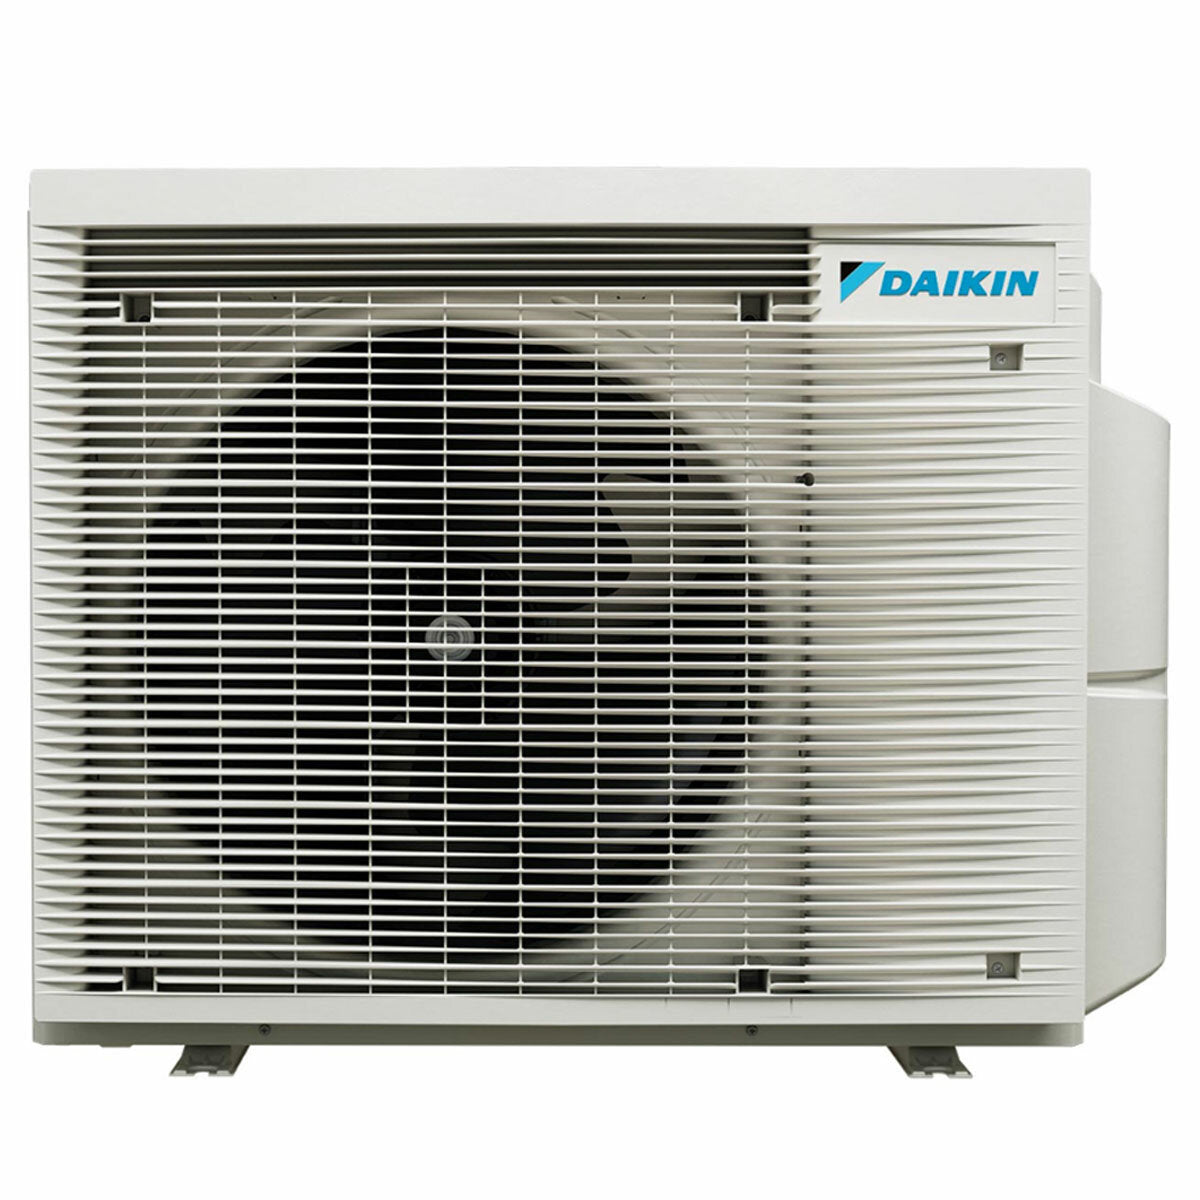 Daikin Stylish White trial split air conditioner 7000+7000+12000 BTU inverter A+++ wifi external unit 5 kW